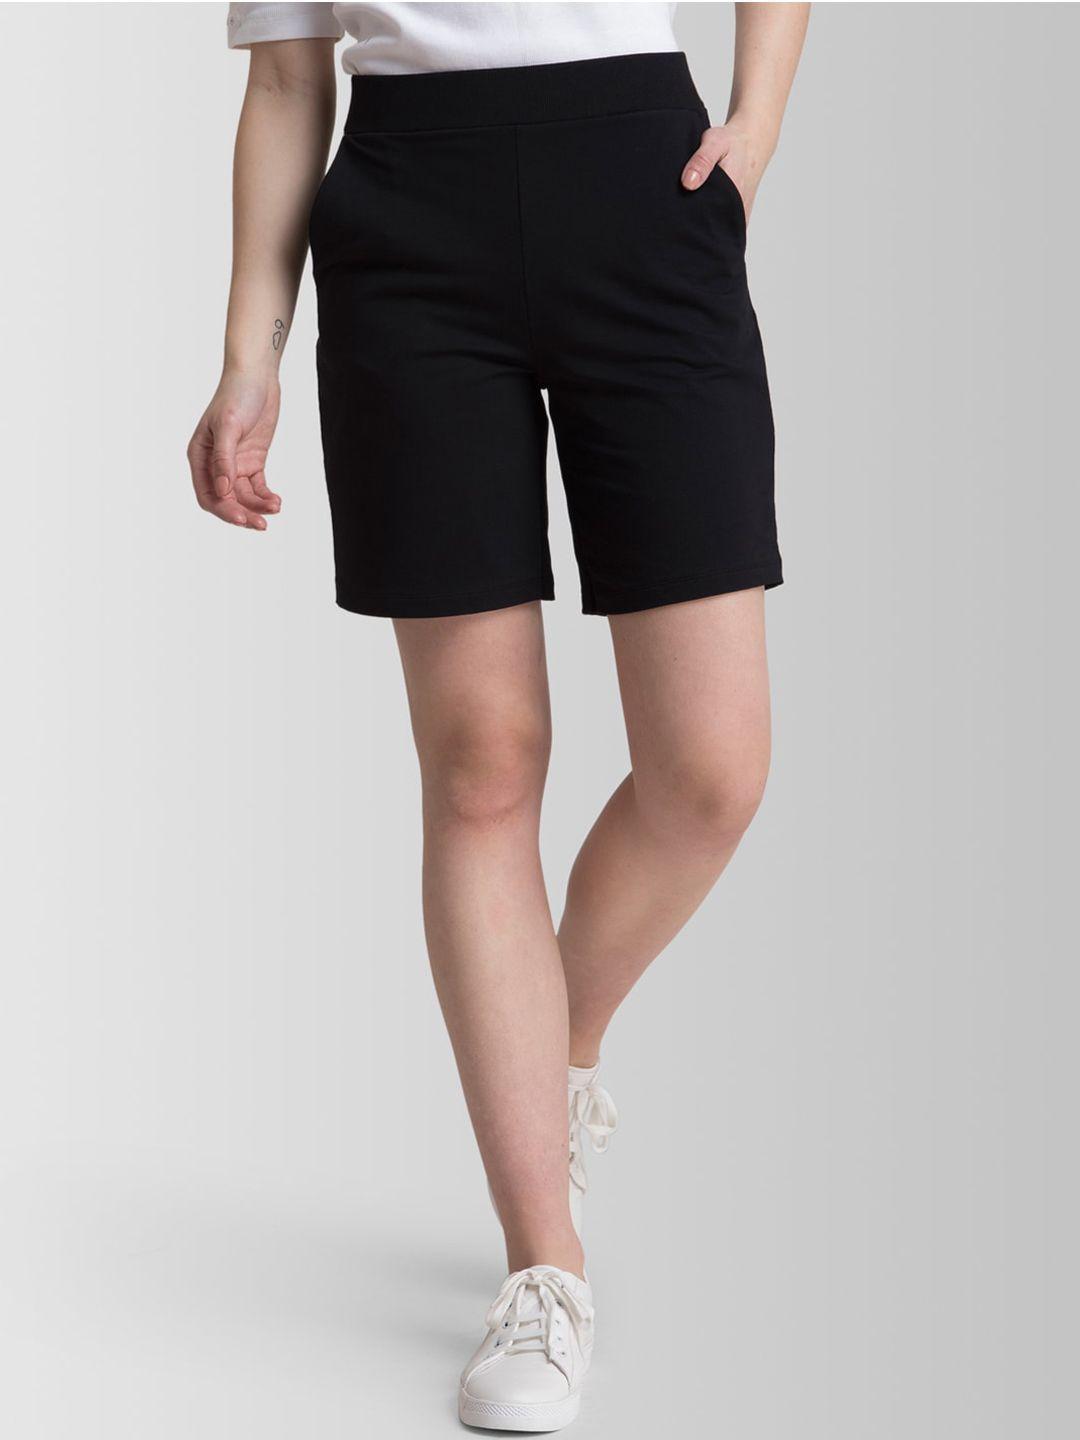 fablestreet women black solid regular fit regular shorts